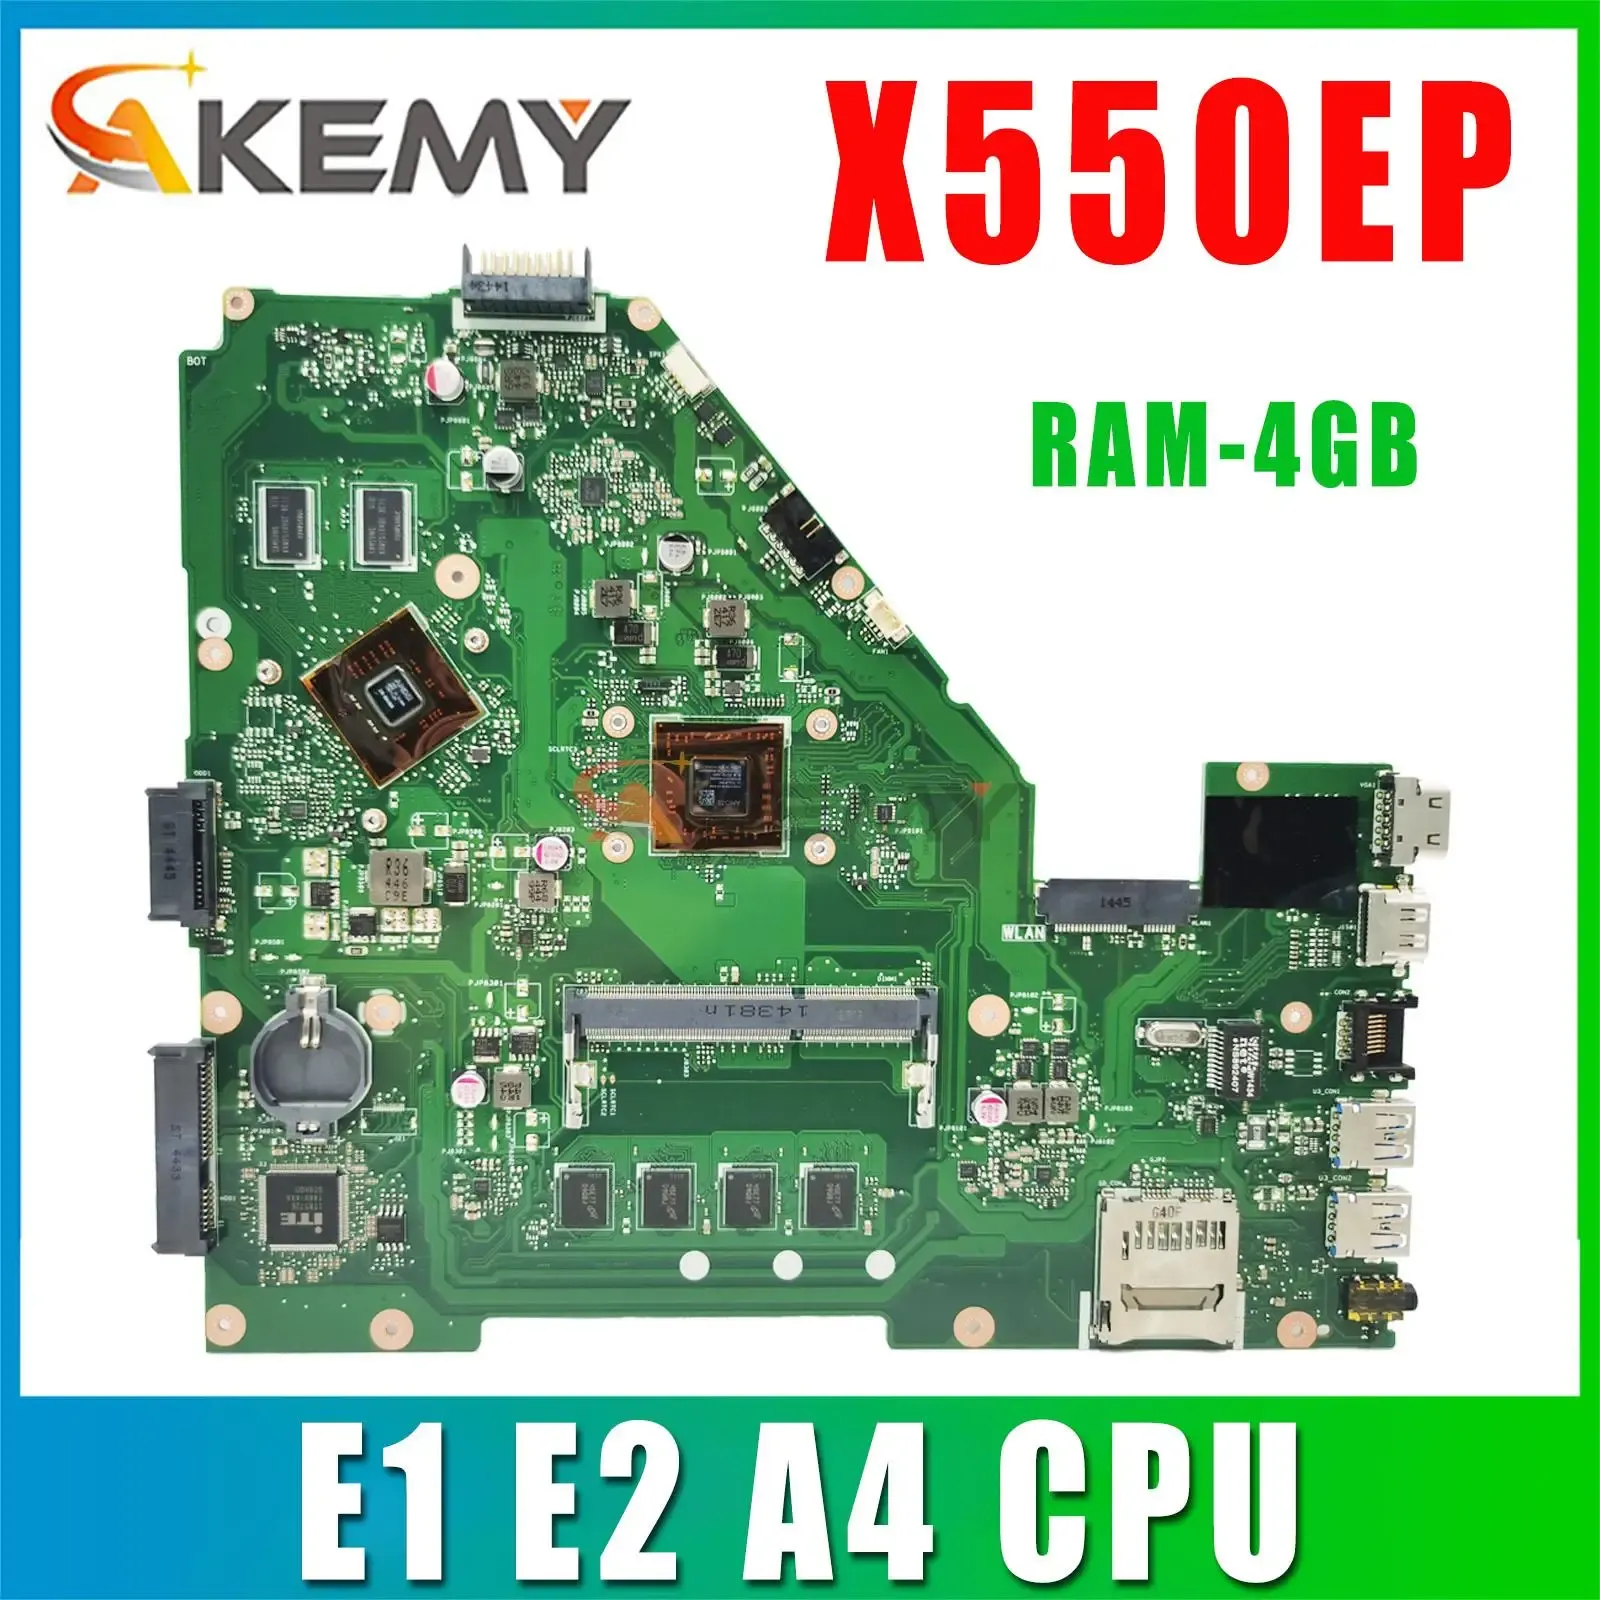 Motorboo de la placa base X550EP Parringboard para ASUS X550 X550E D552E X552E X550EA La portátil portátil con E1 E2 A4 RAM4GB PM/UMA